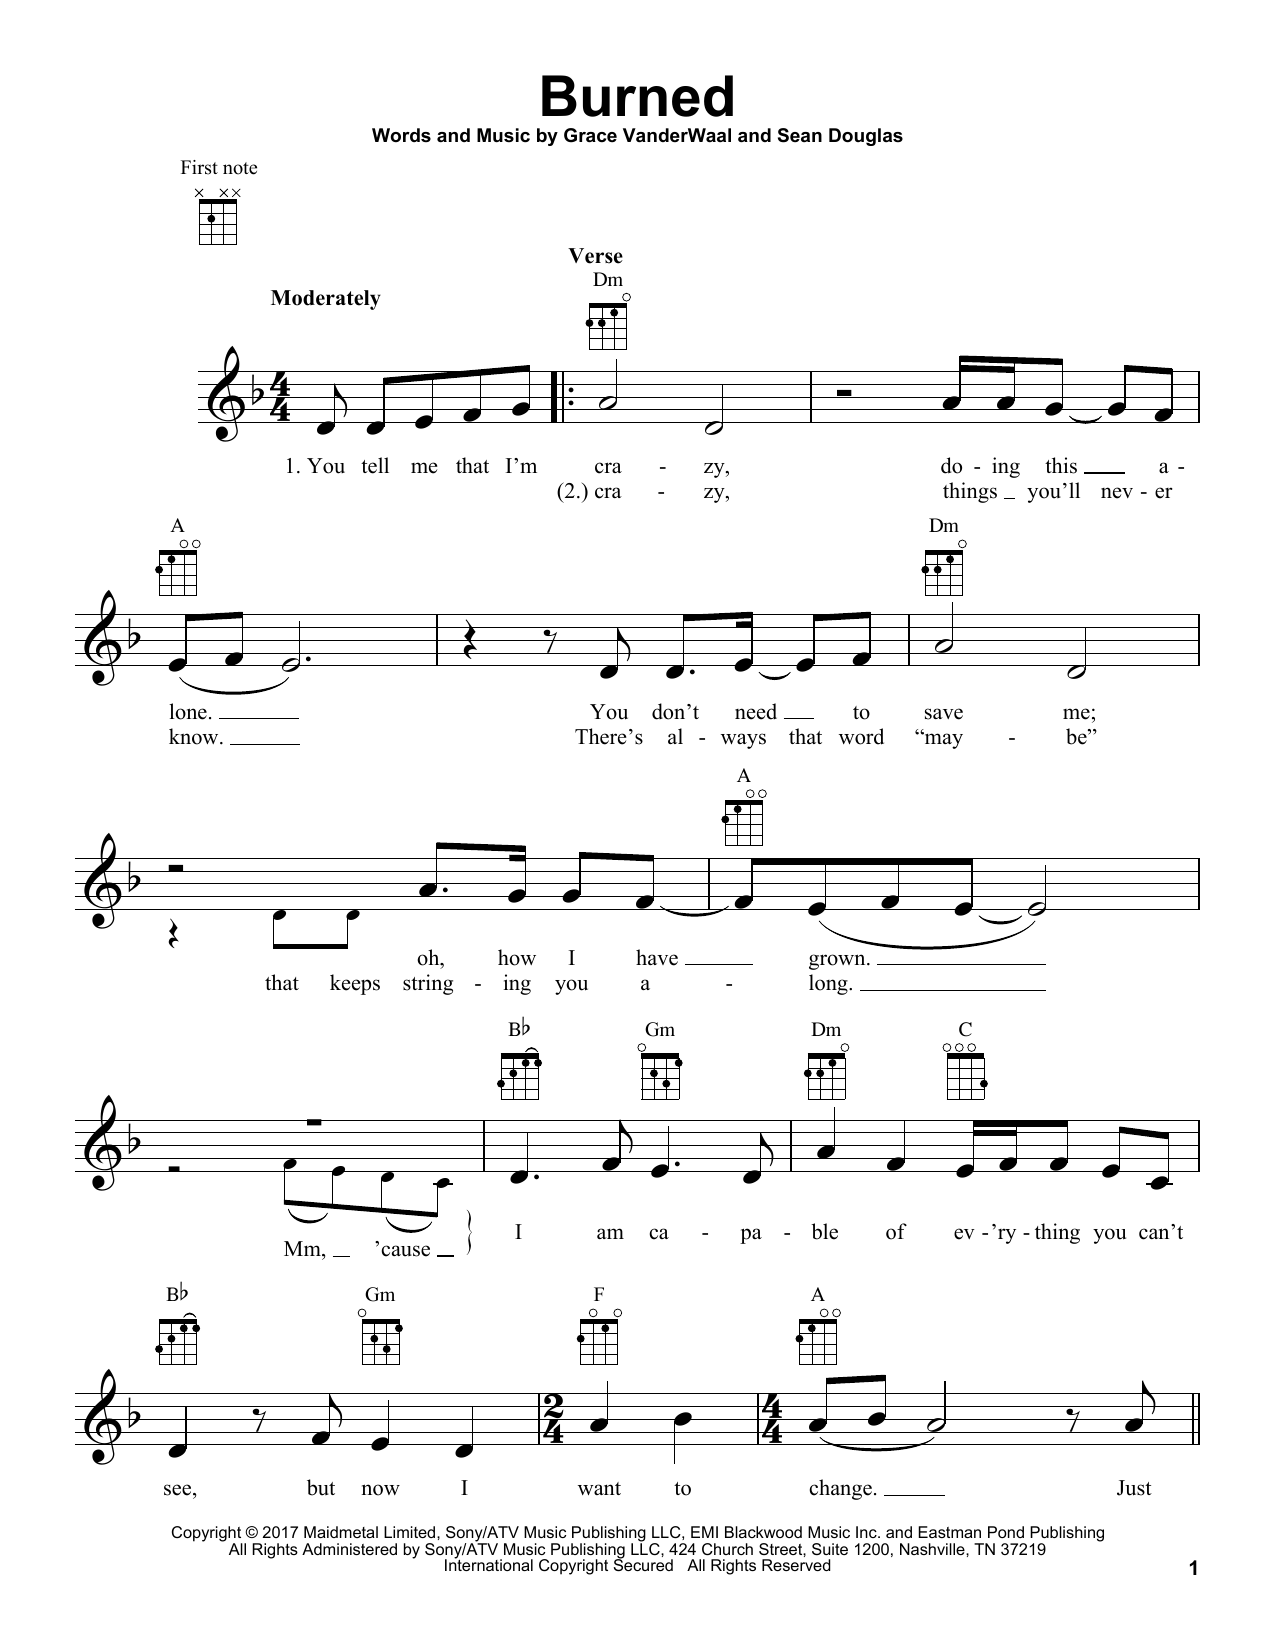 Grace VanderWaal Burned Sheet Music Notes & Chords for Ukulele - Download or Print PDF